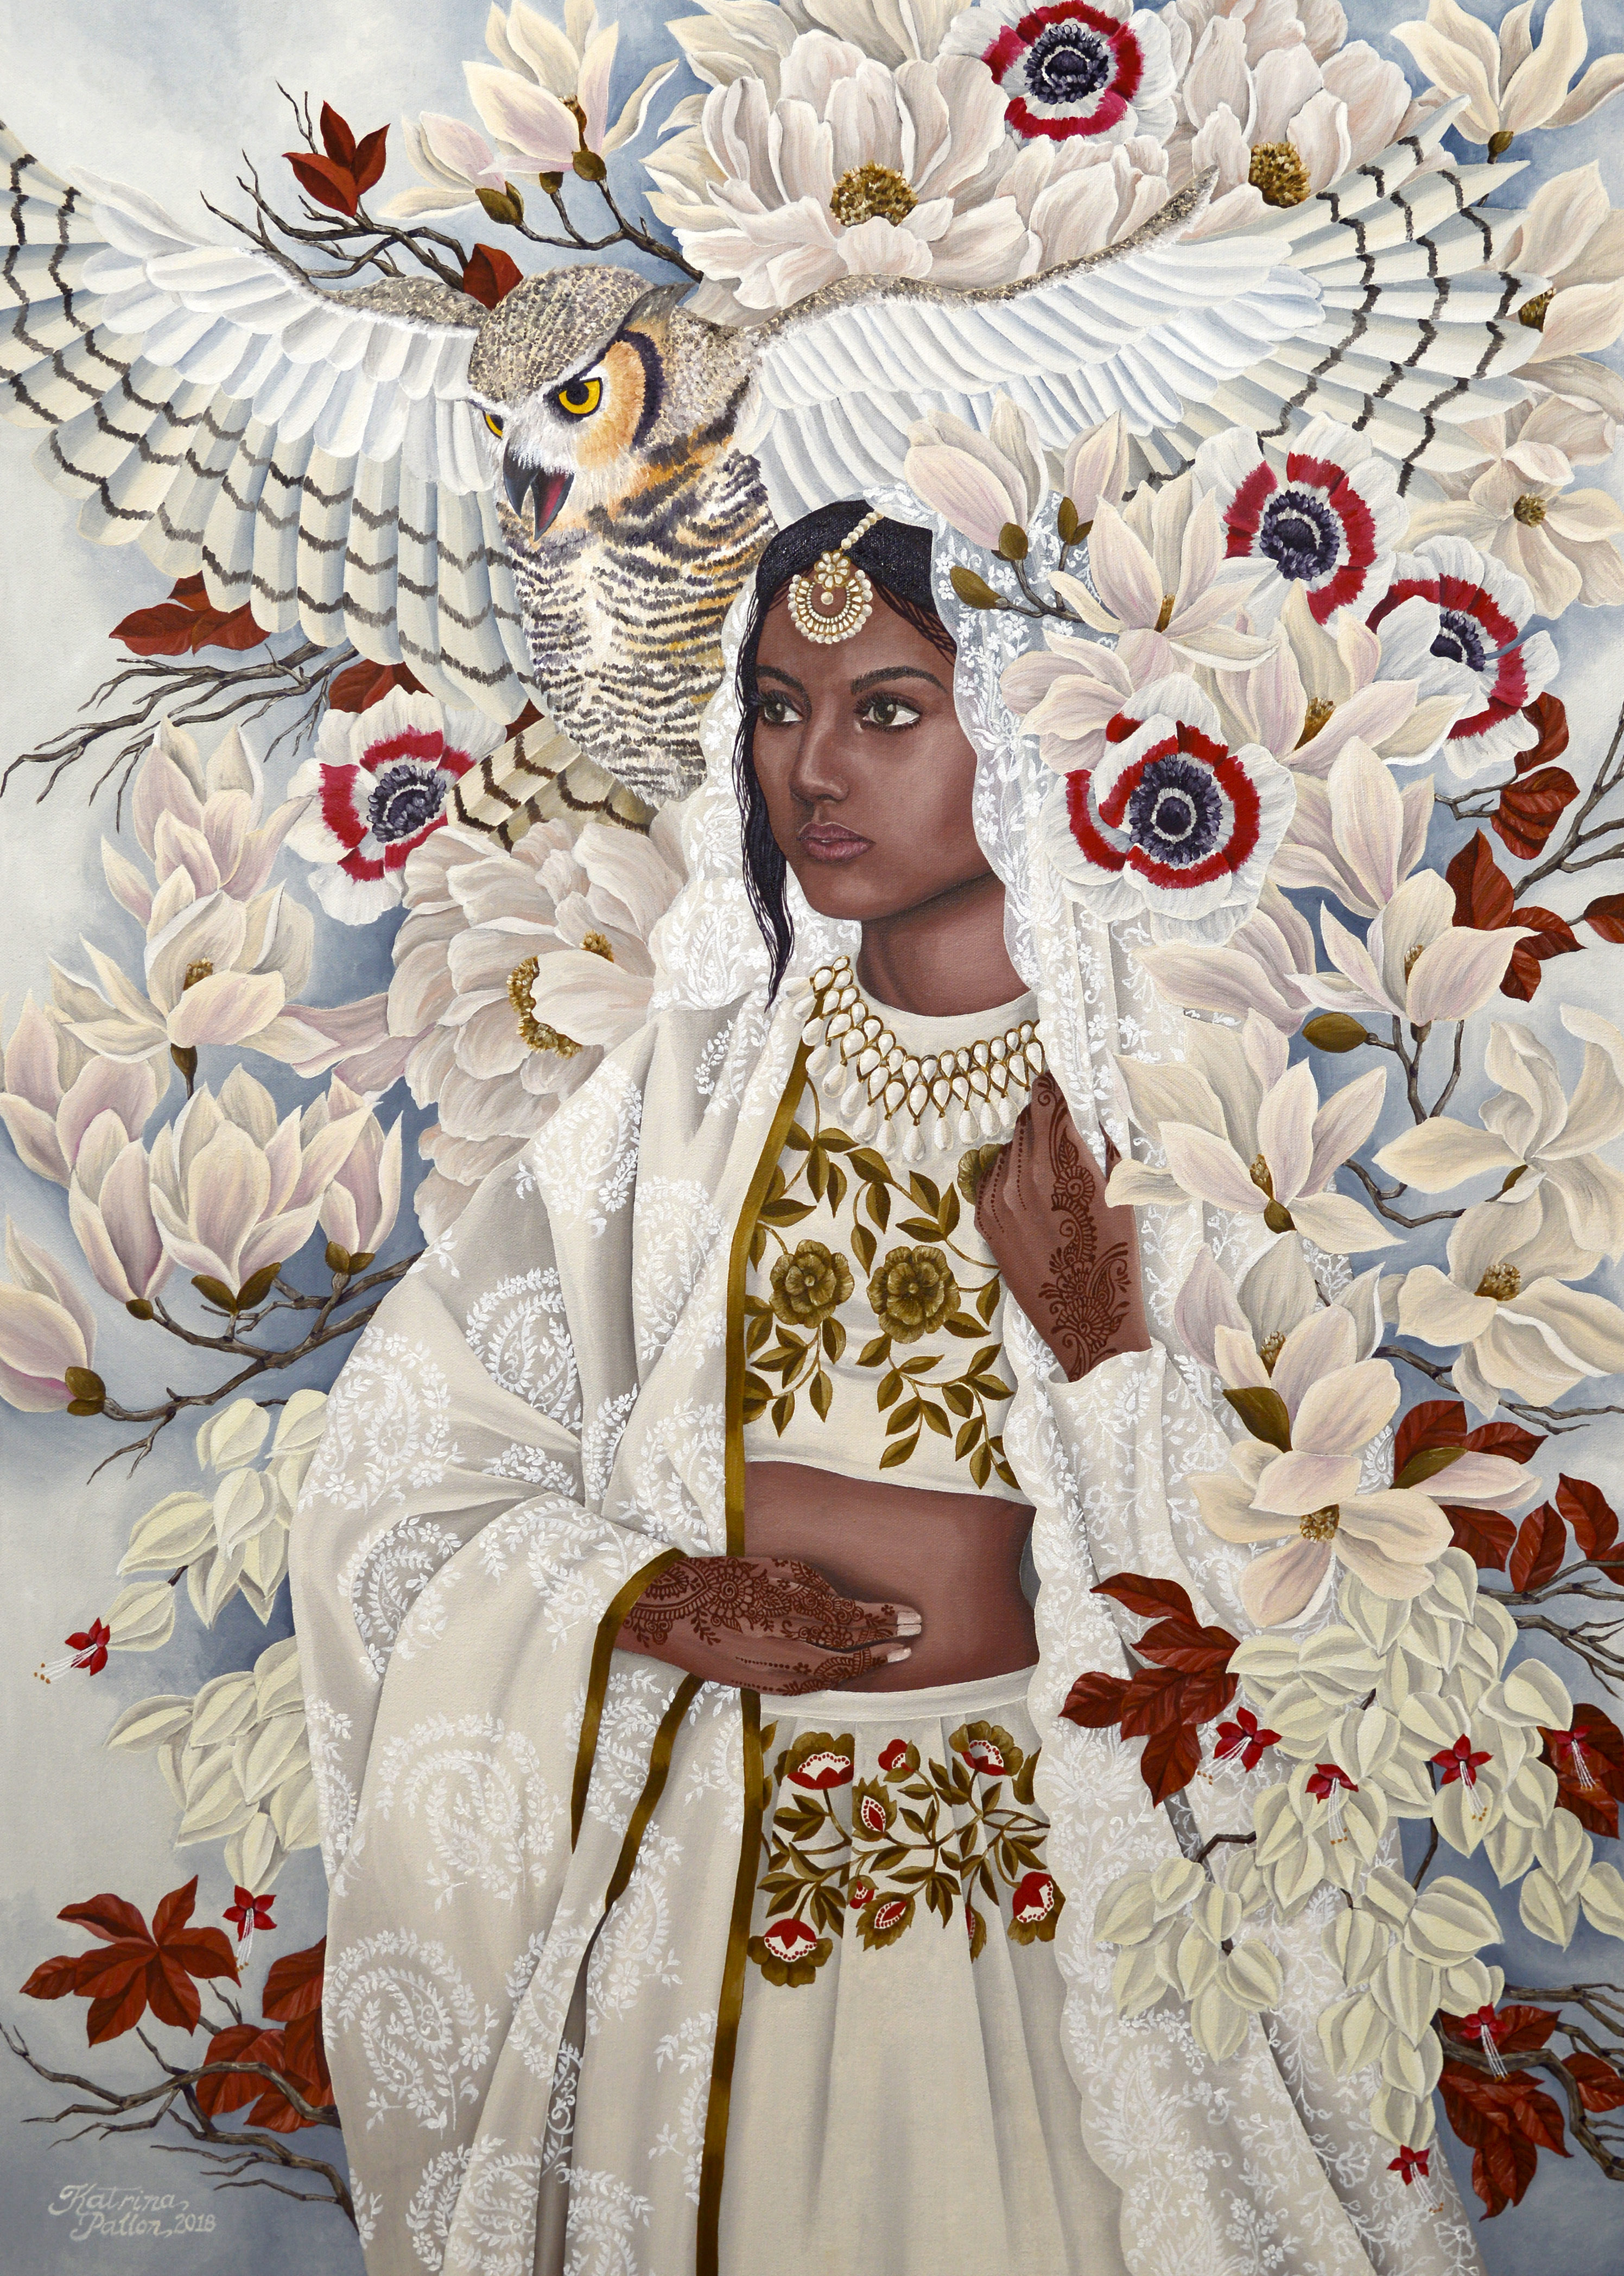 "The High Priestess," by Katrina Pallon